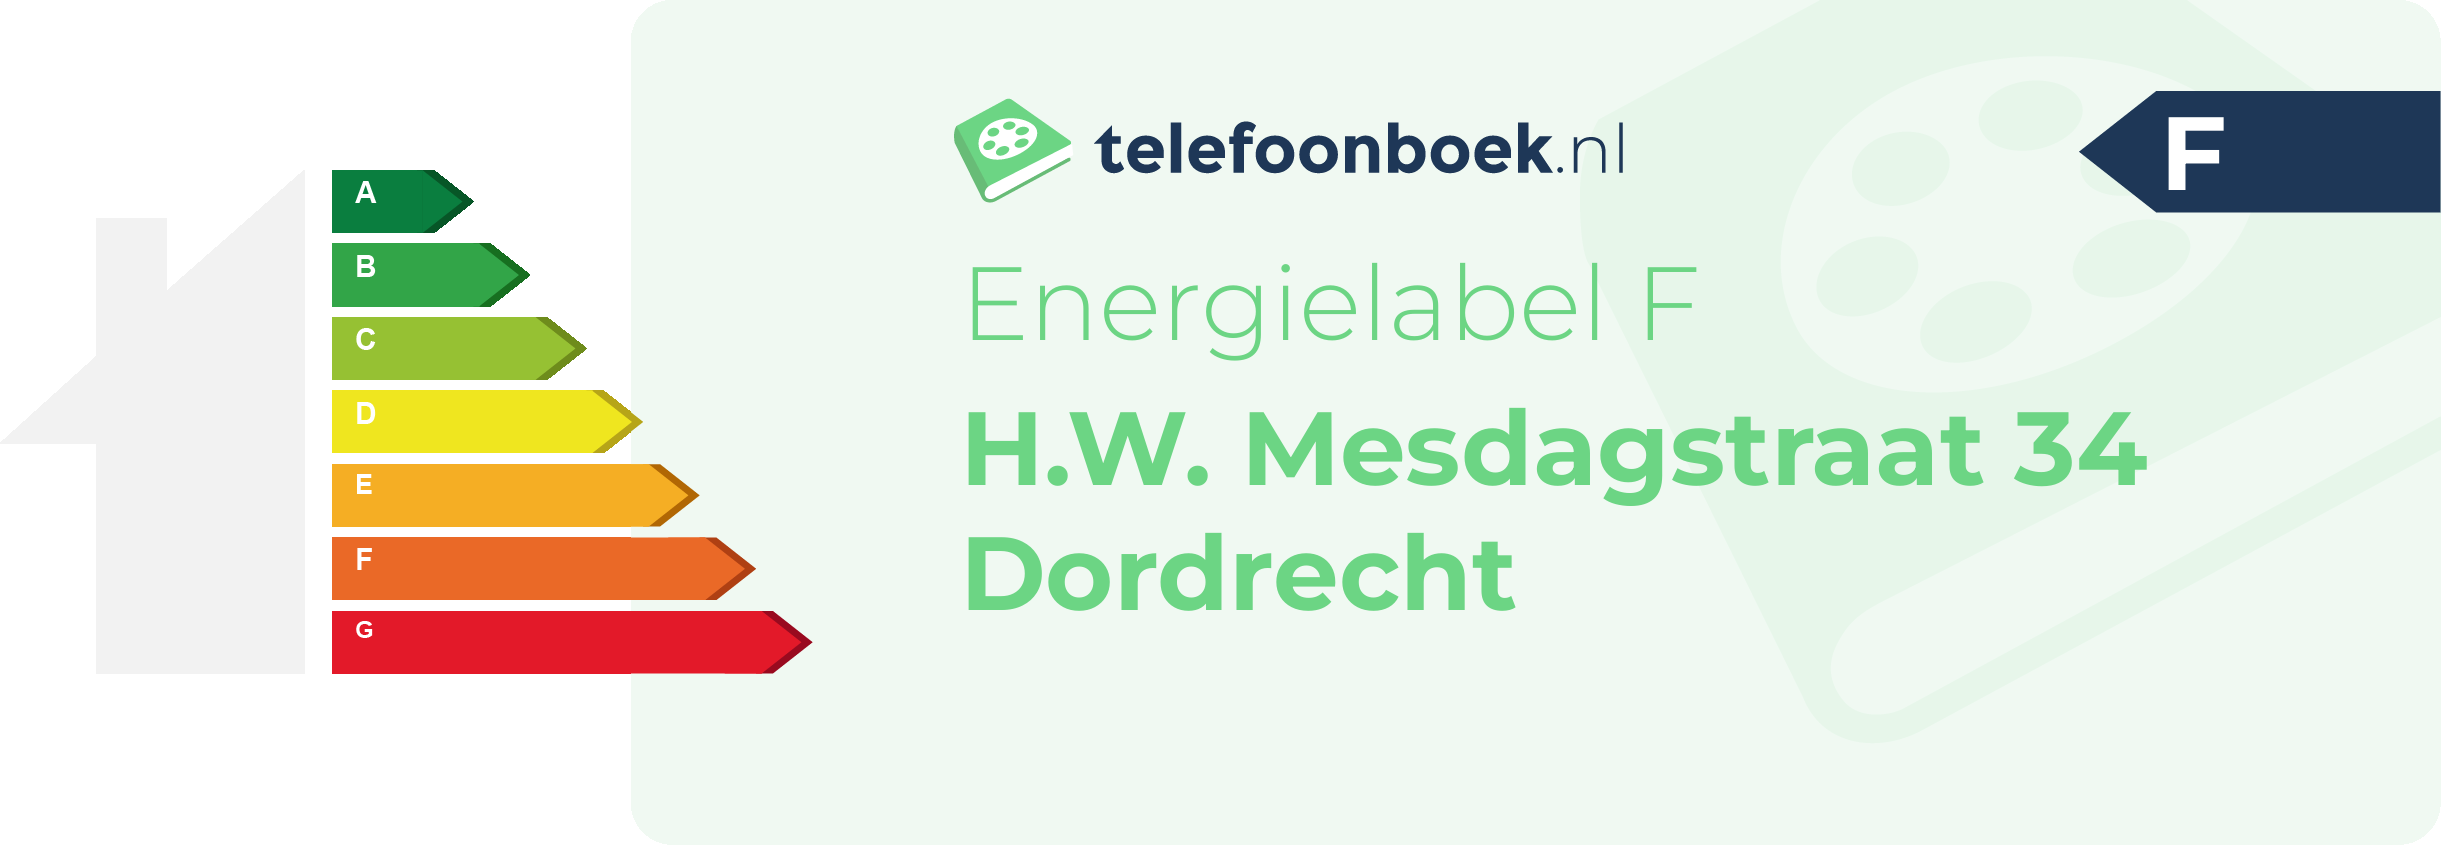 Energielabel H.W. Mesdagstraat 34 Dordrecht